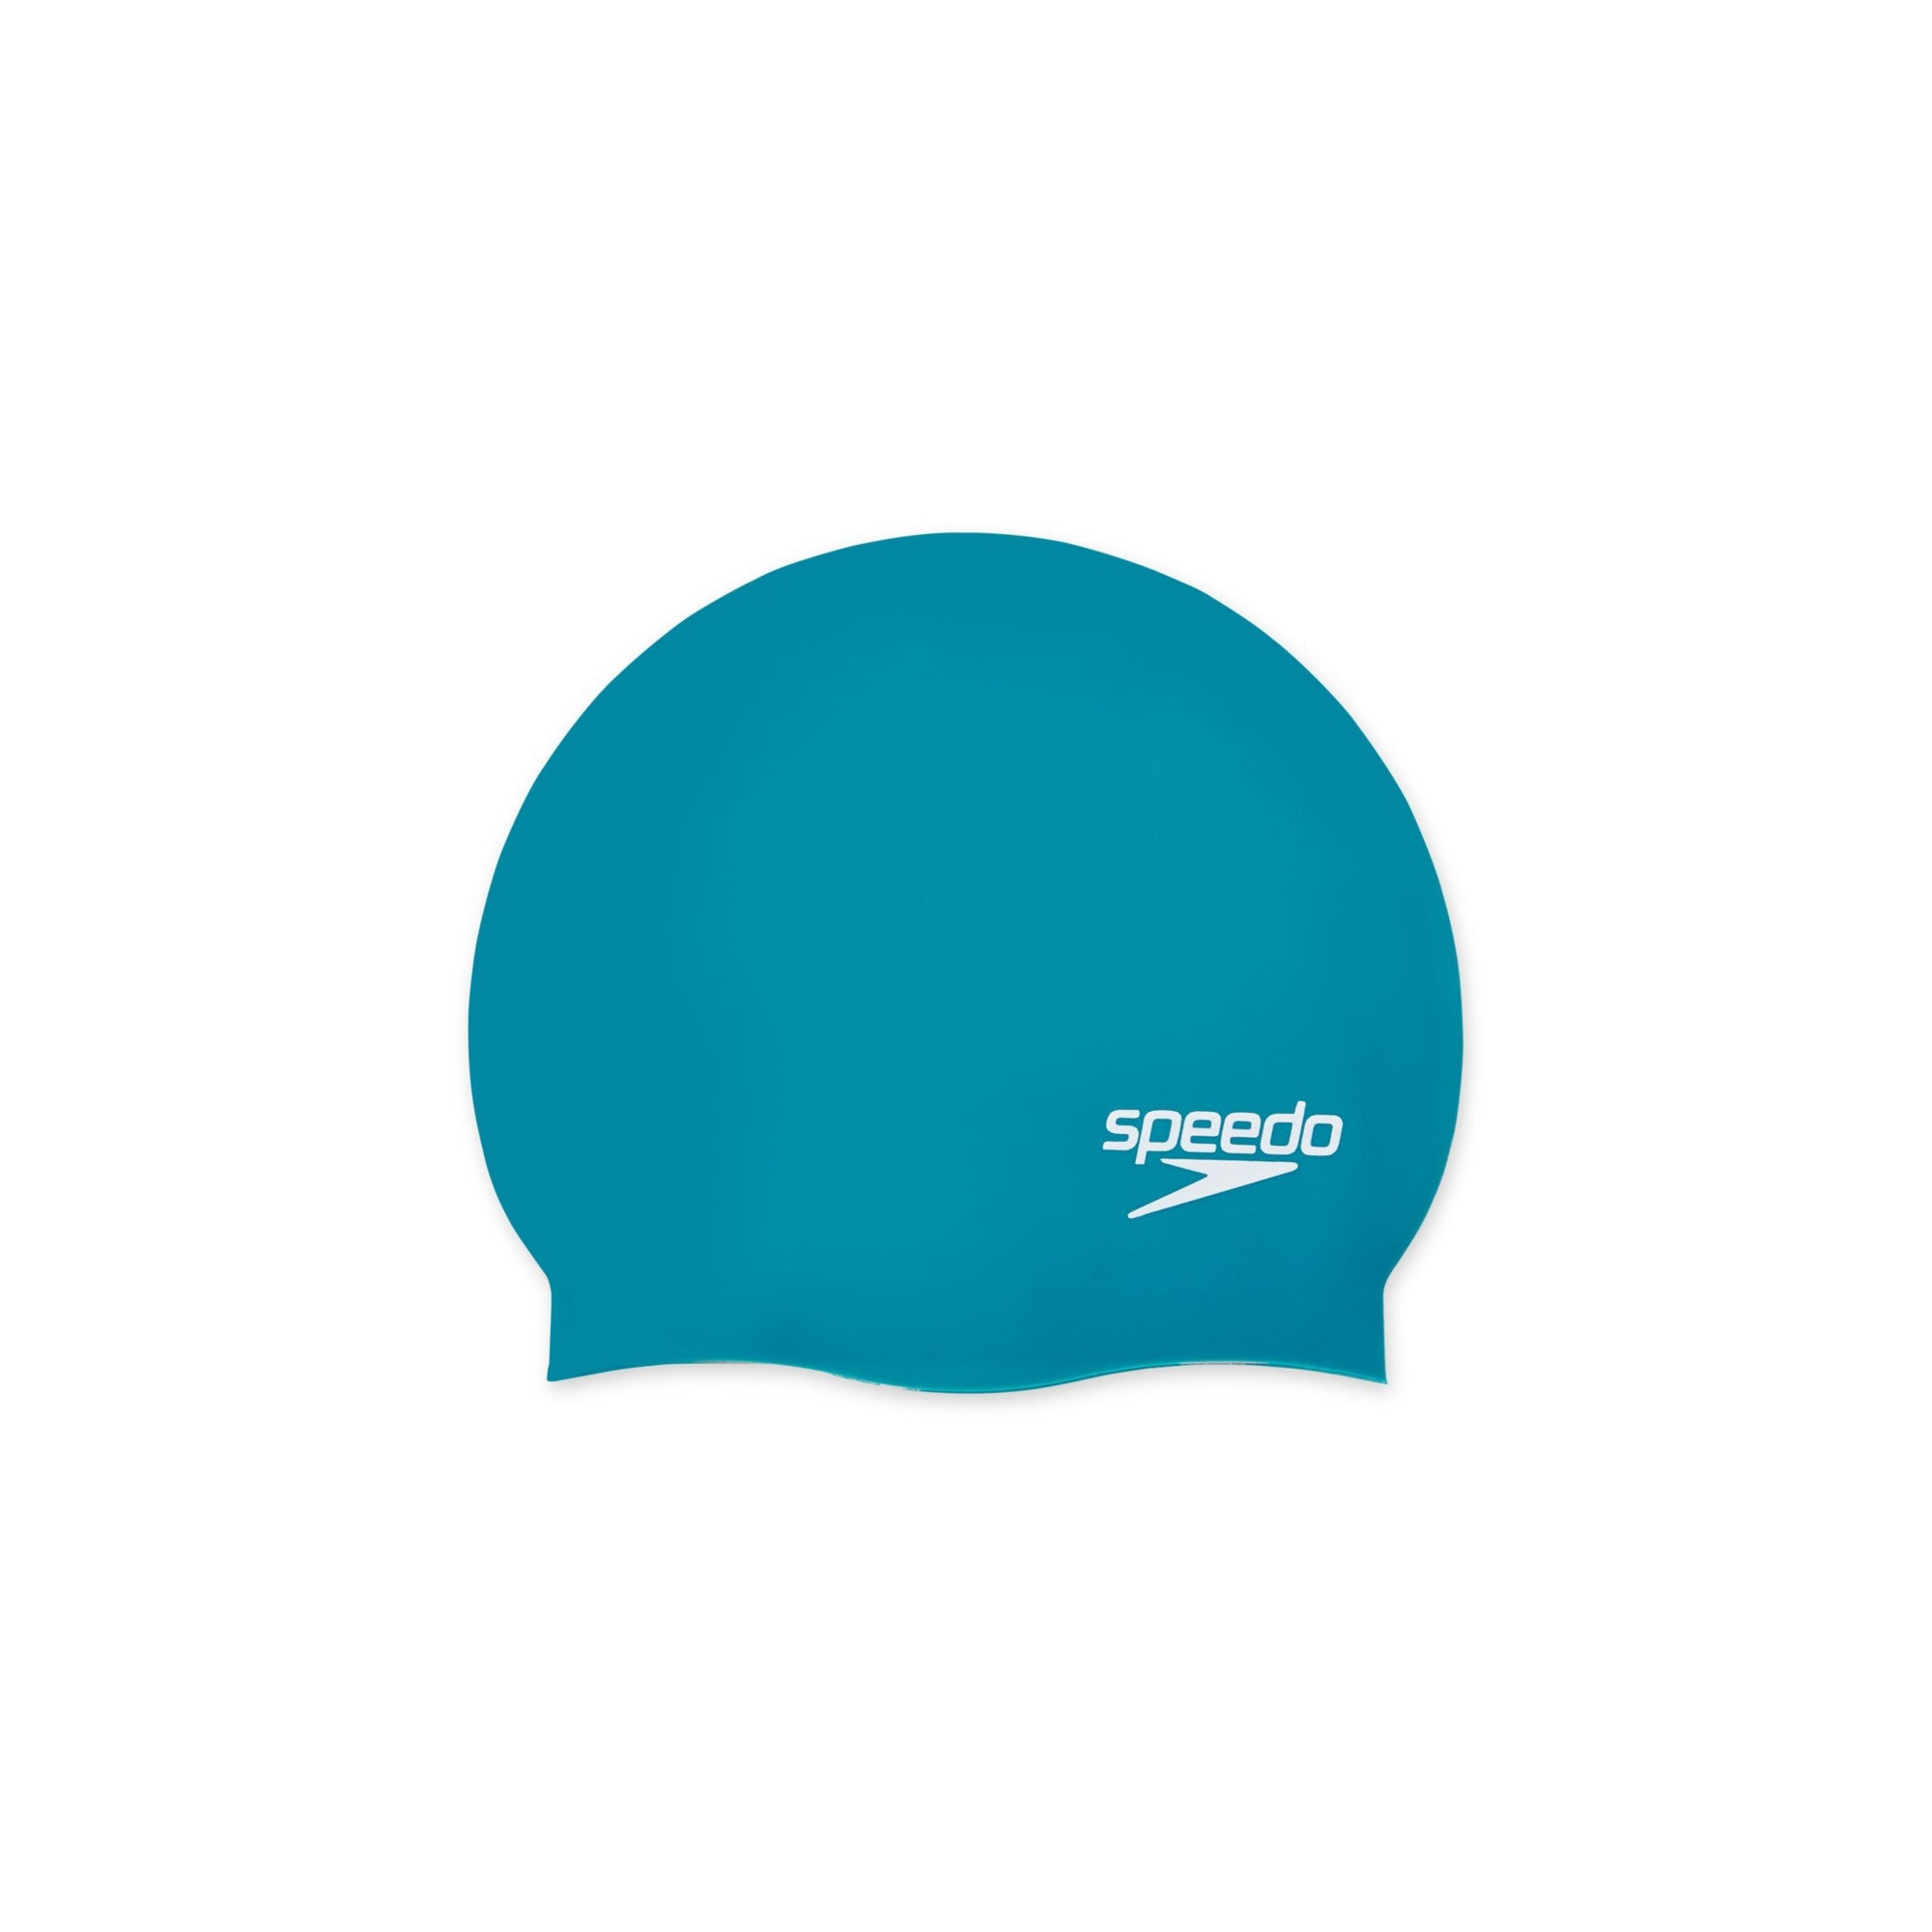 Speedo Elastomeric Solid Silicone Swim Cap, White